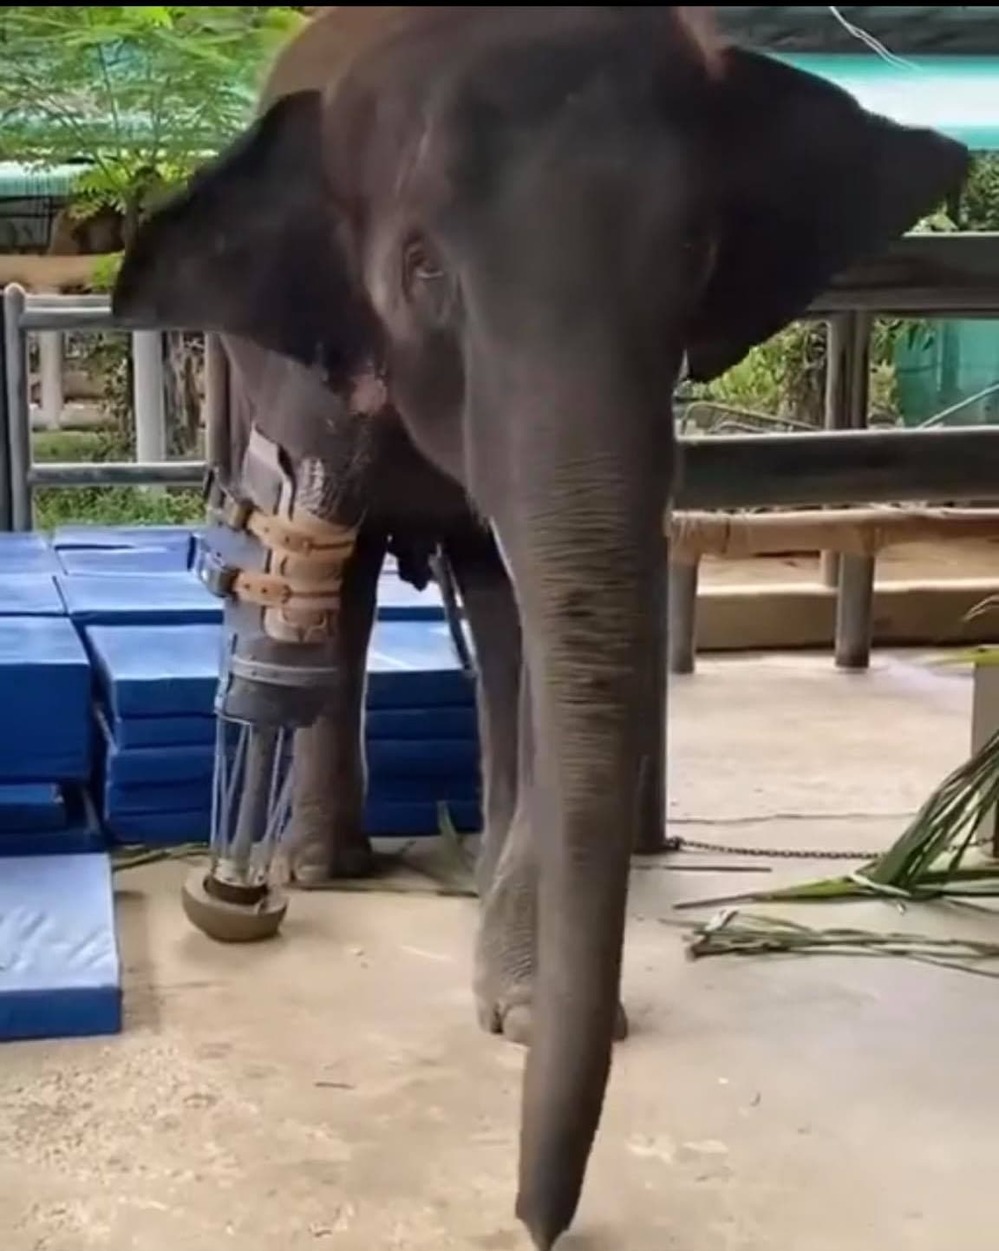  
Cô voi đã có chân giả giúp việc đi lại dễ dàng hơn. (Ảnh: Chụp màn hình)